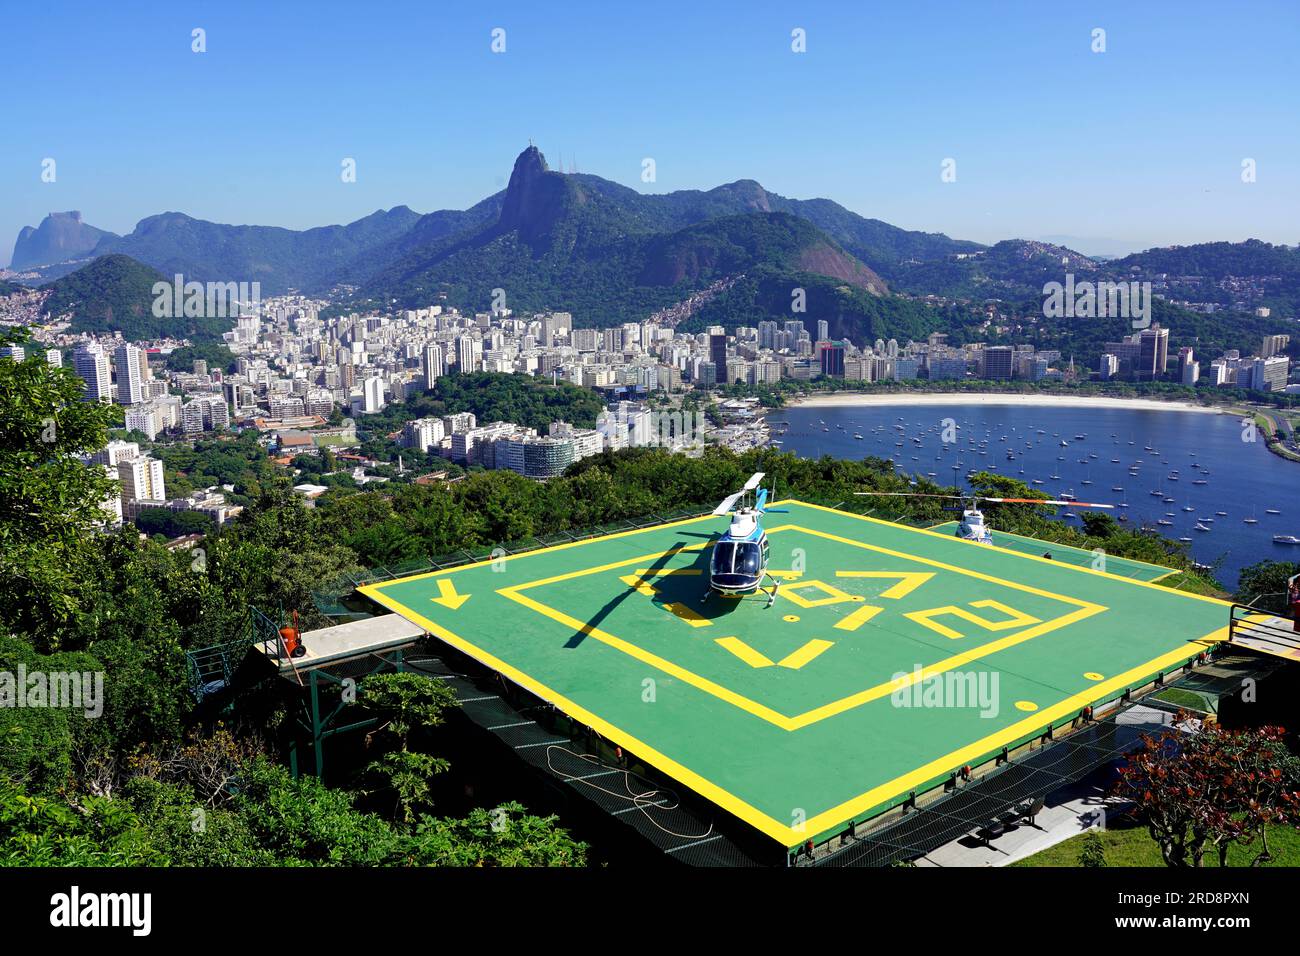 RIO DE JANEIRO, BRAZIL - JUNE 21, 2023: Helipad on Urca Hill with Rio de Janeiro cityscape and Corcovado mountain on the background, Rio de Janeiro, B Stock Photo